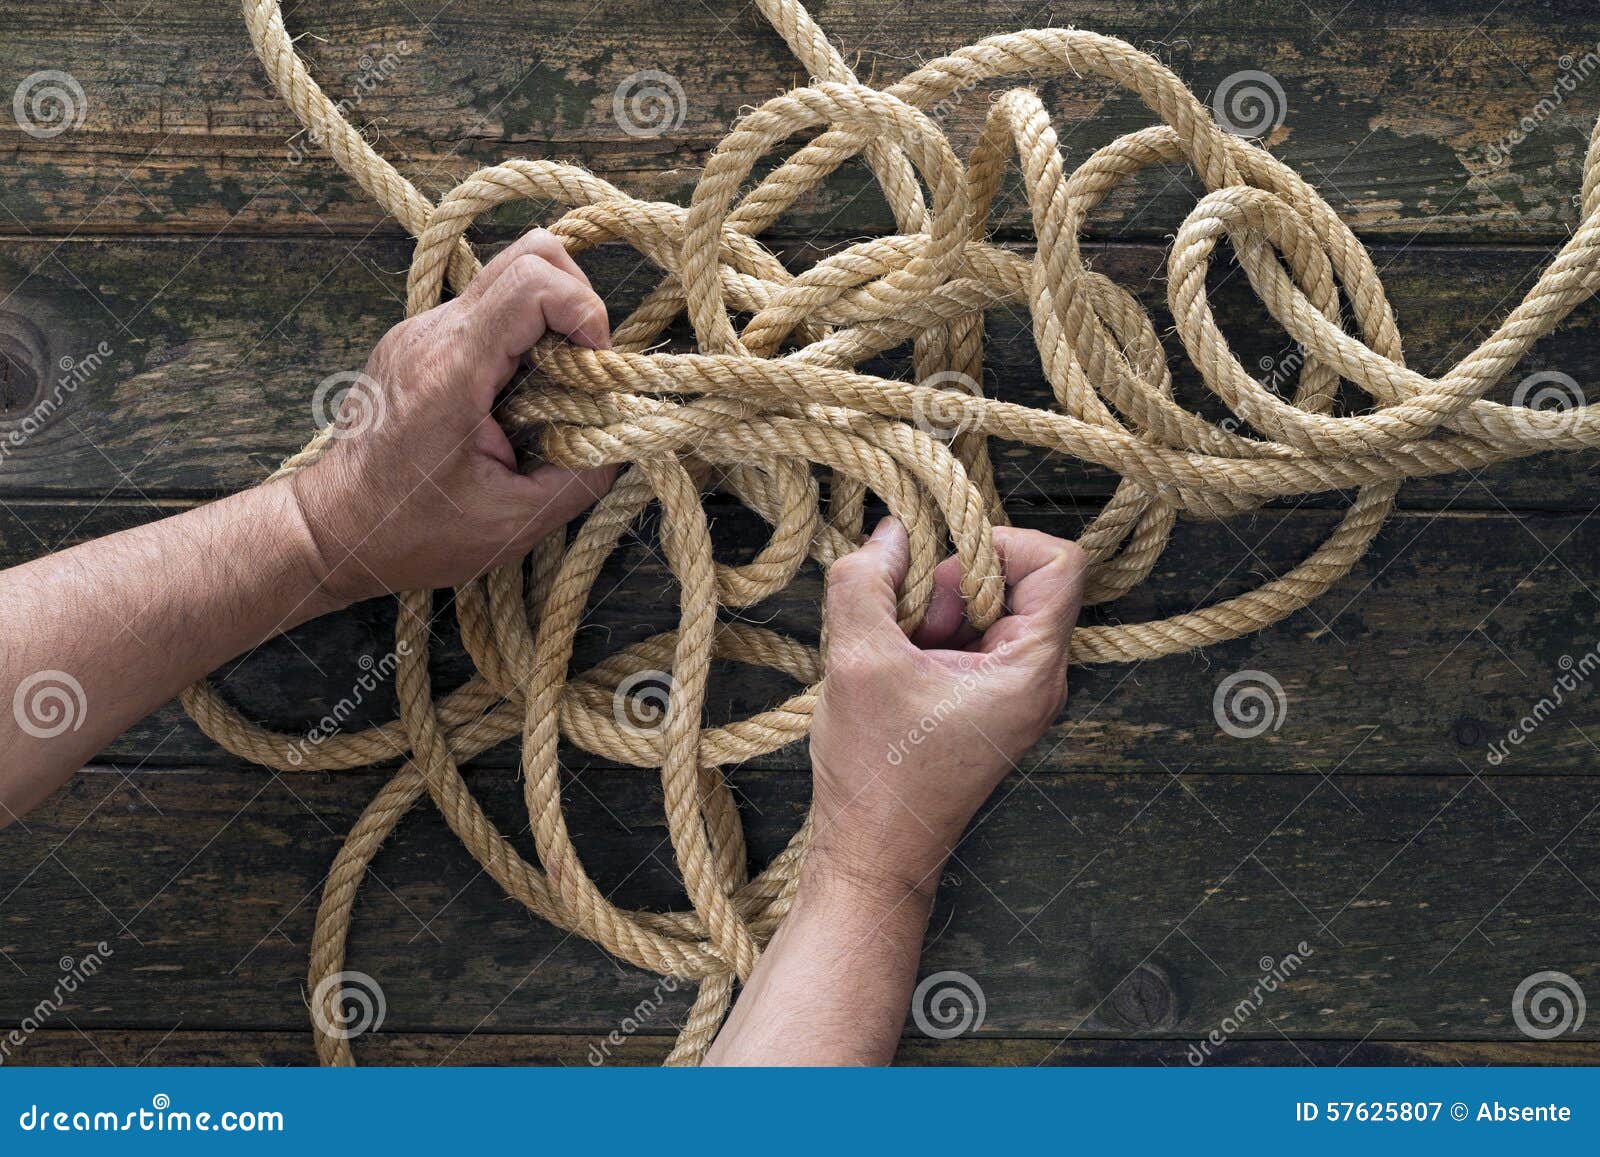 Unraveling. Dos manos que intentan desenredar una cuerda Fondo de madera